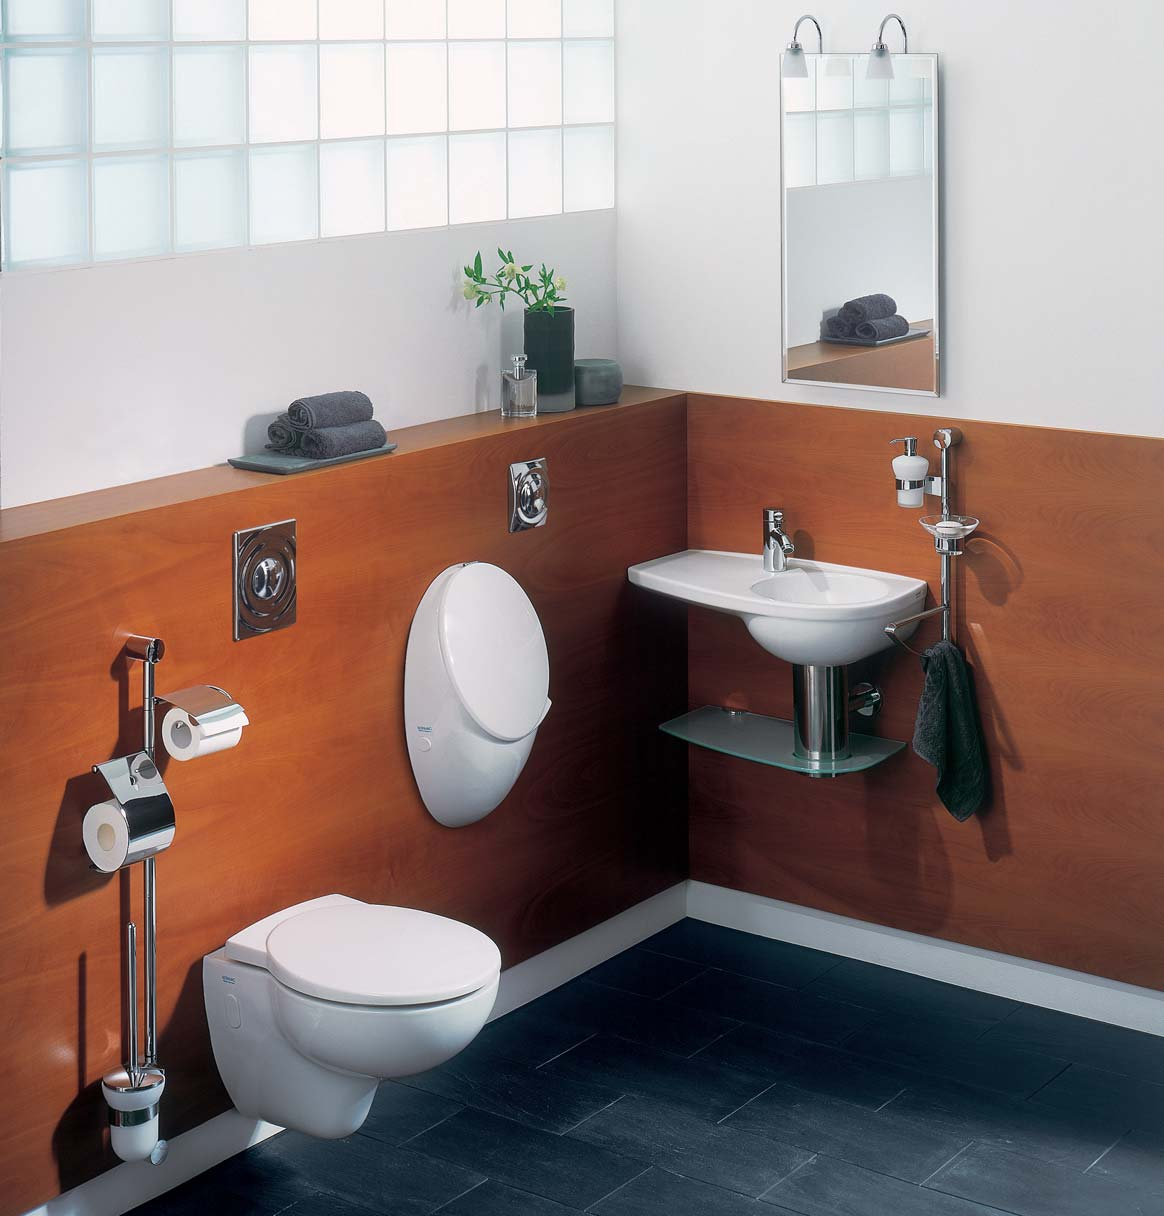 Joly PRE MALÉ KÚPEĽNE Pokiaľ je potrebné vybaviť skutočne malú alebo hosťovskú kúpeľňu, potom je prvou voľbou séria Joly.